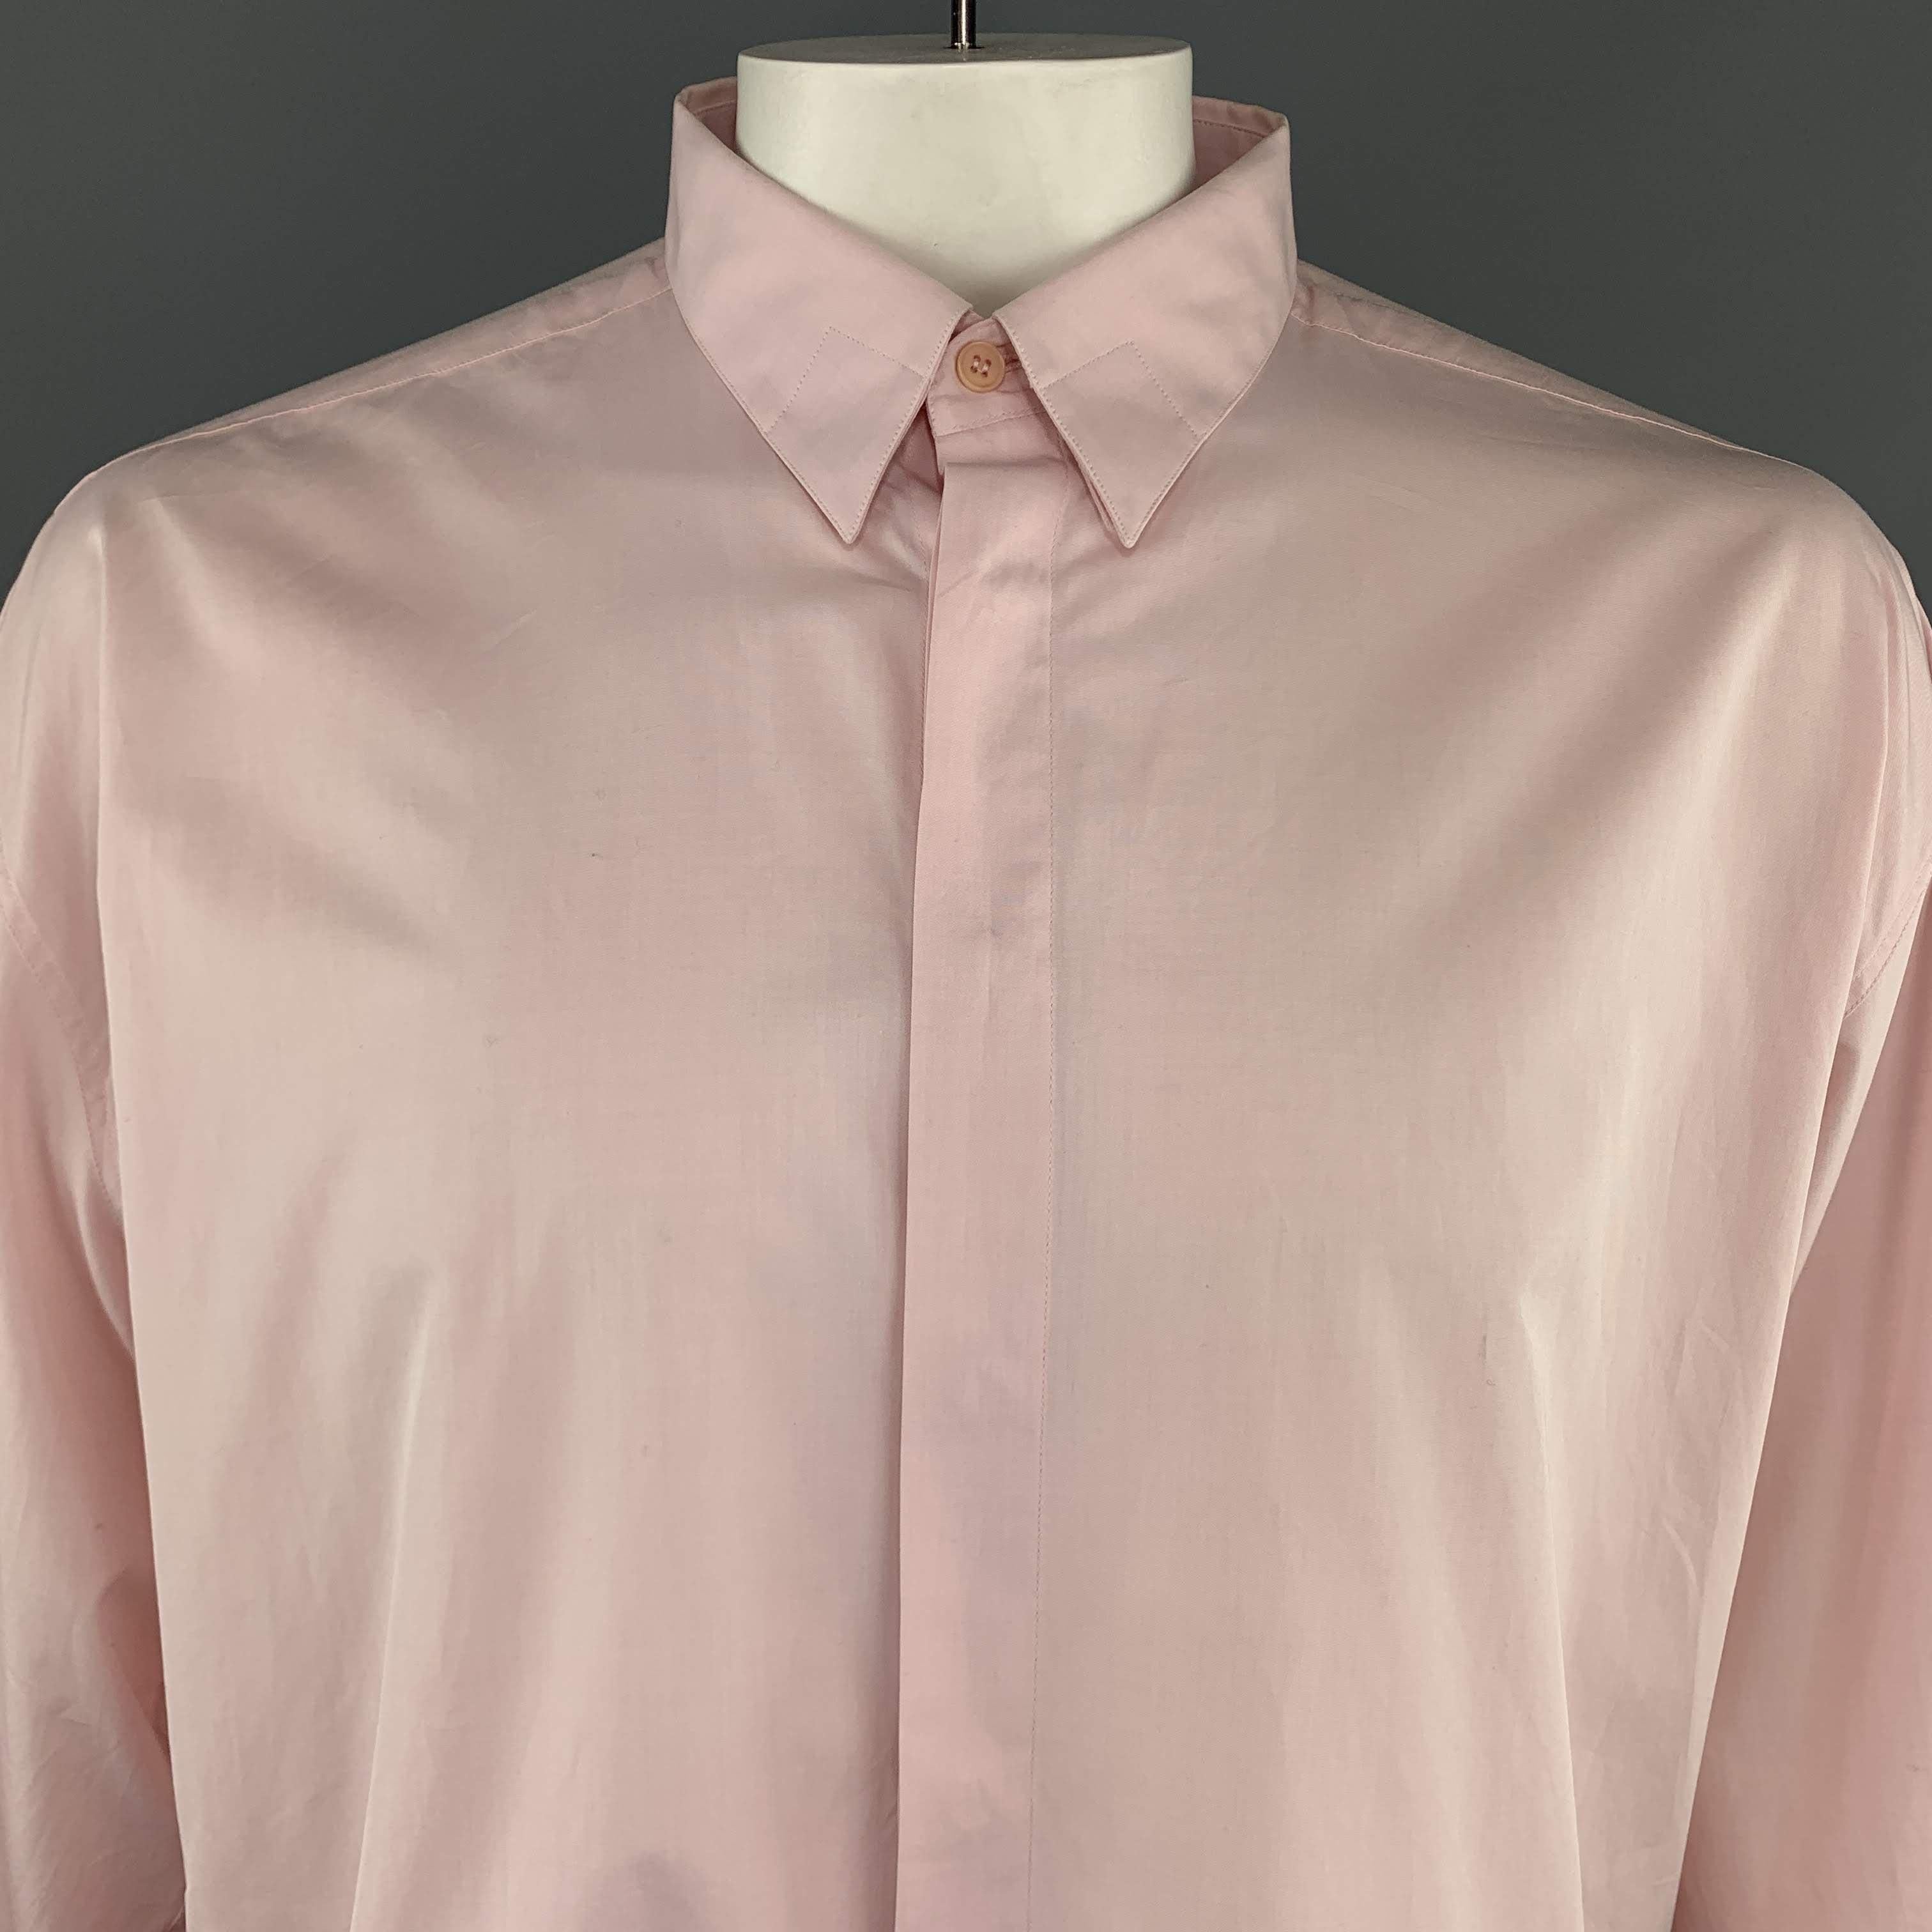 Men's GIANNI VERSACE Size XL Light Pink Cotton Hidden Buttons Long Sleeve Shirt For Sale